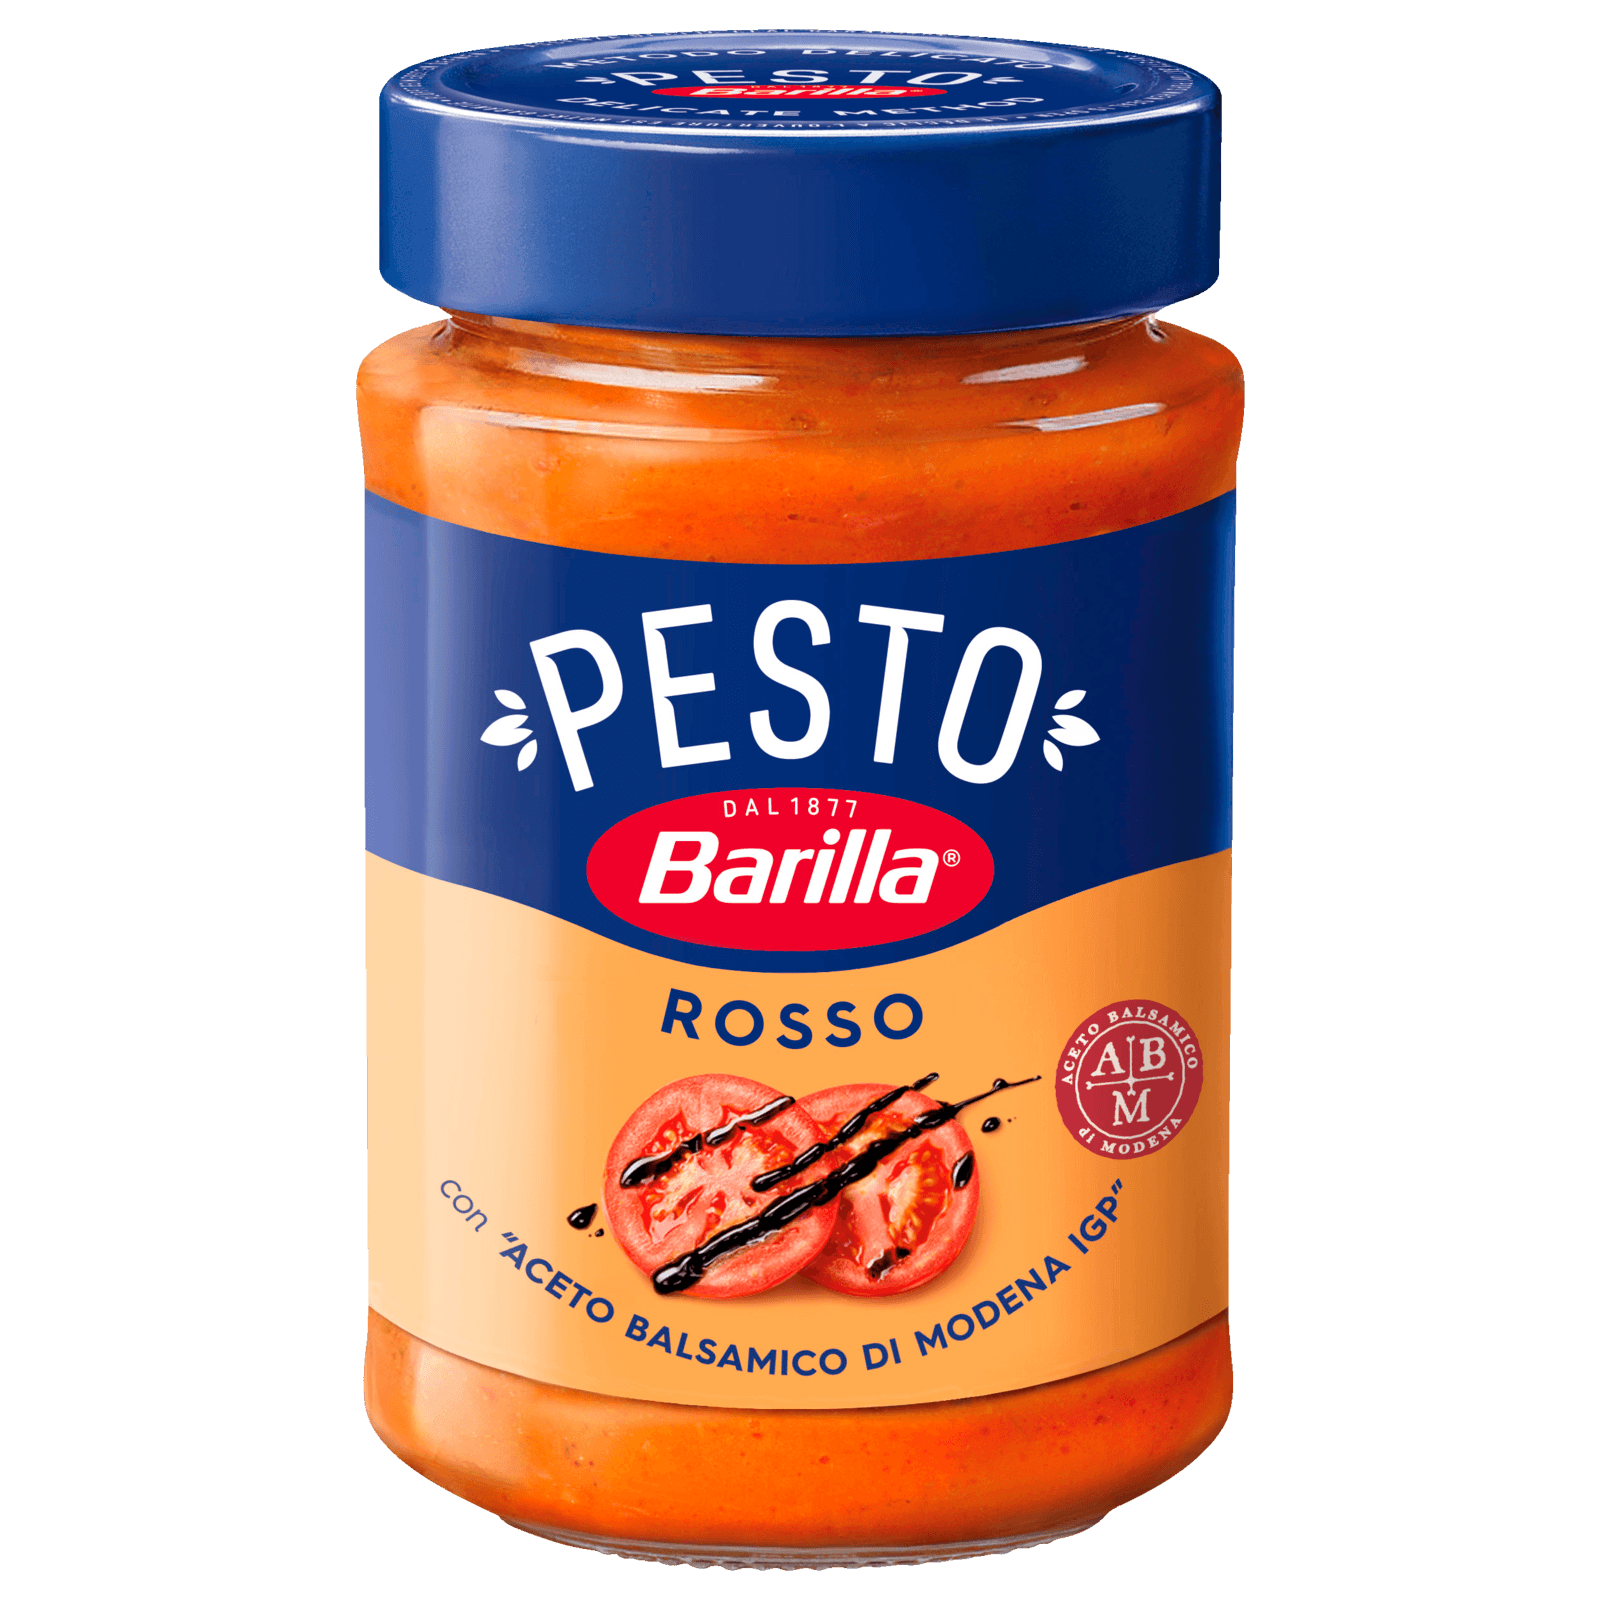 Barilla Pesto Rosso 200g bei REWE online bestellen!